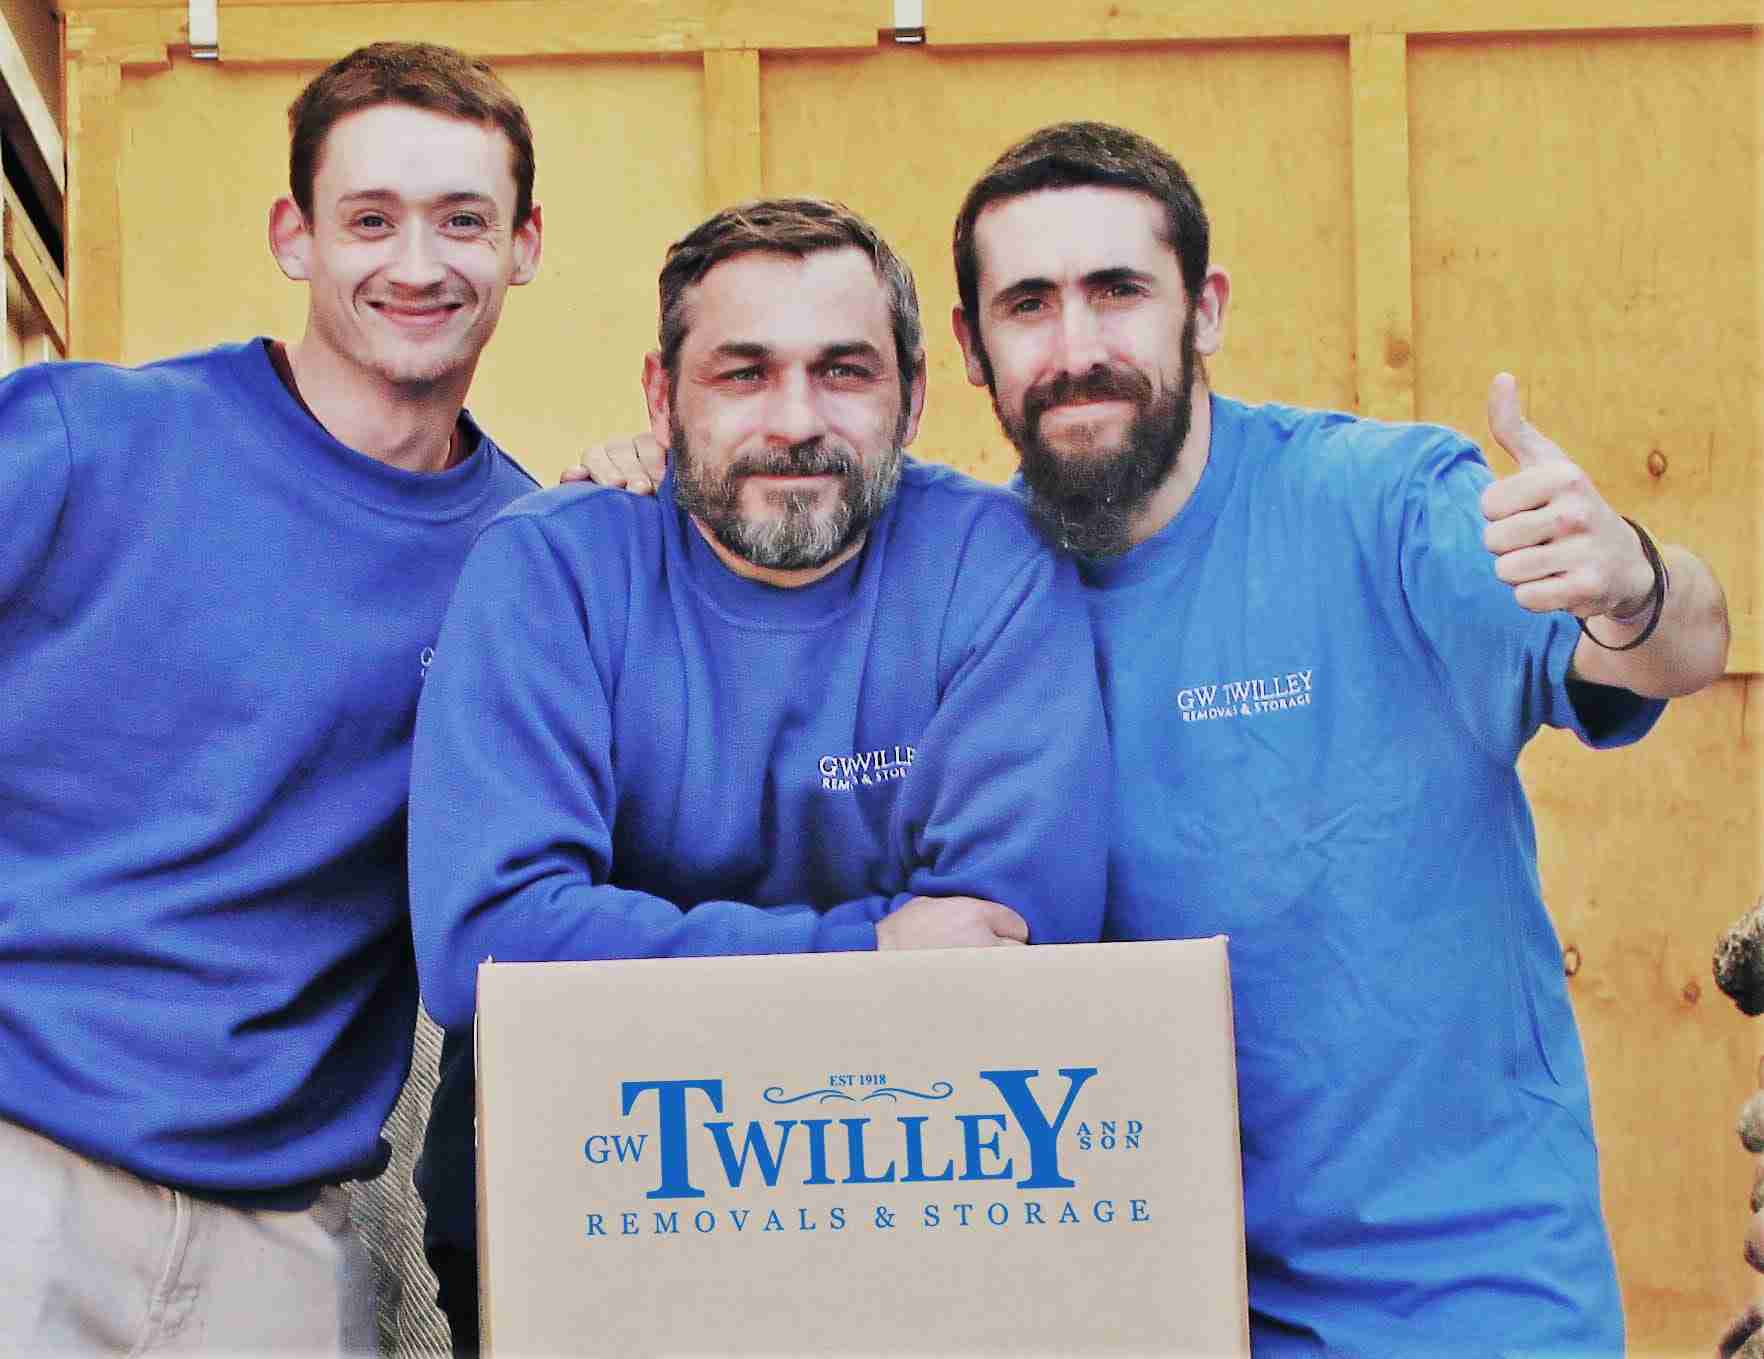 Twilleys removals team